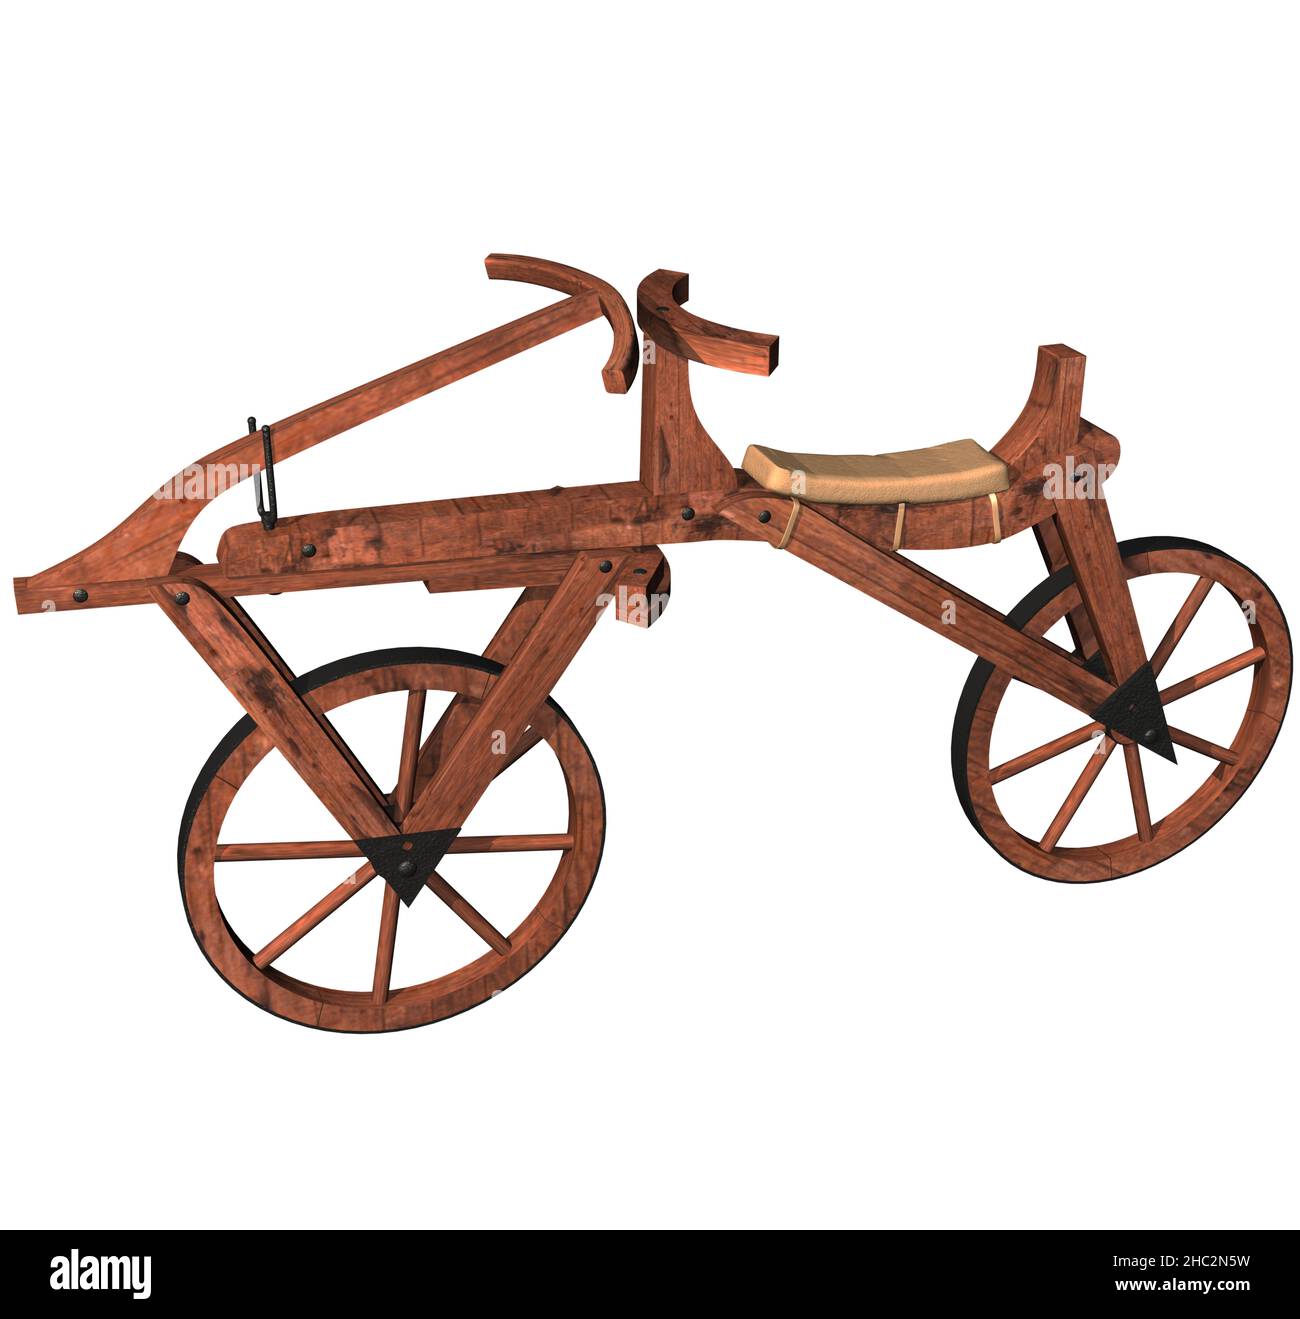 3D rappresentazione illustrazione di una bicicletta Draisine o Velocipede; creata e brevettata nel 1818 dal barone tedesco Karl von Drais. Foto Stock